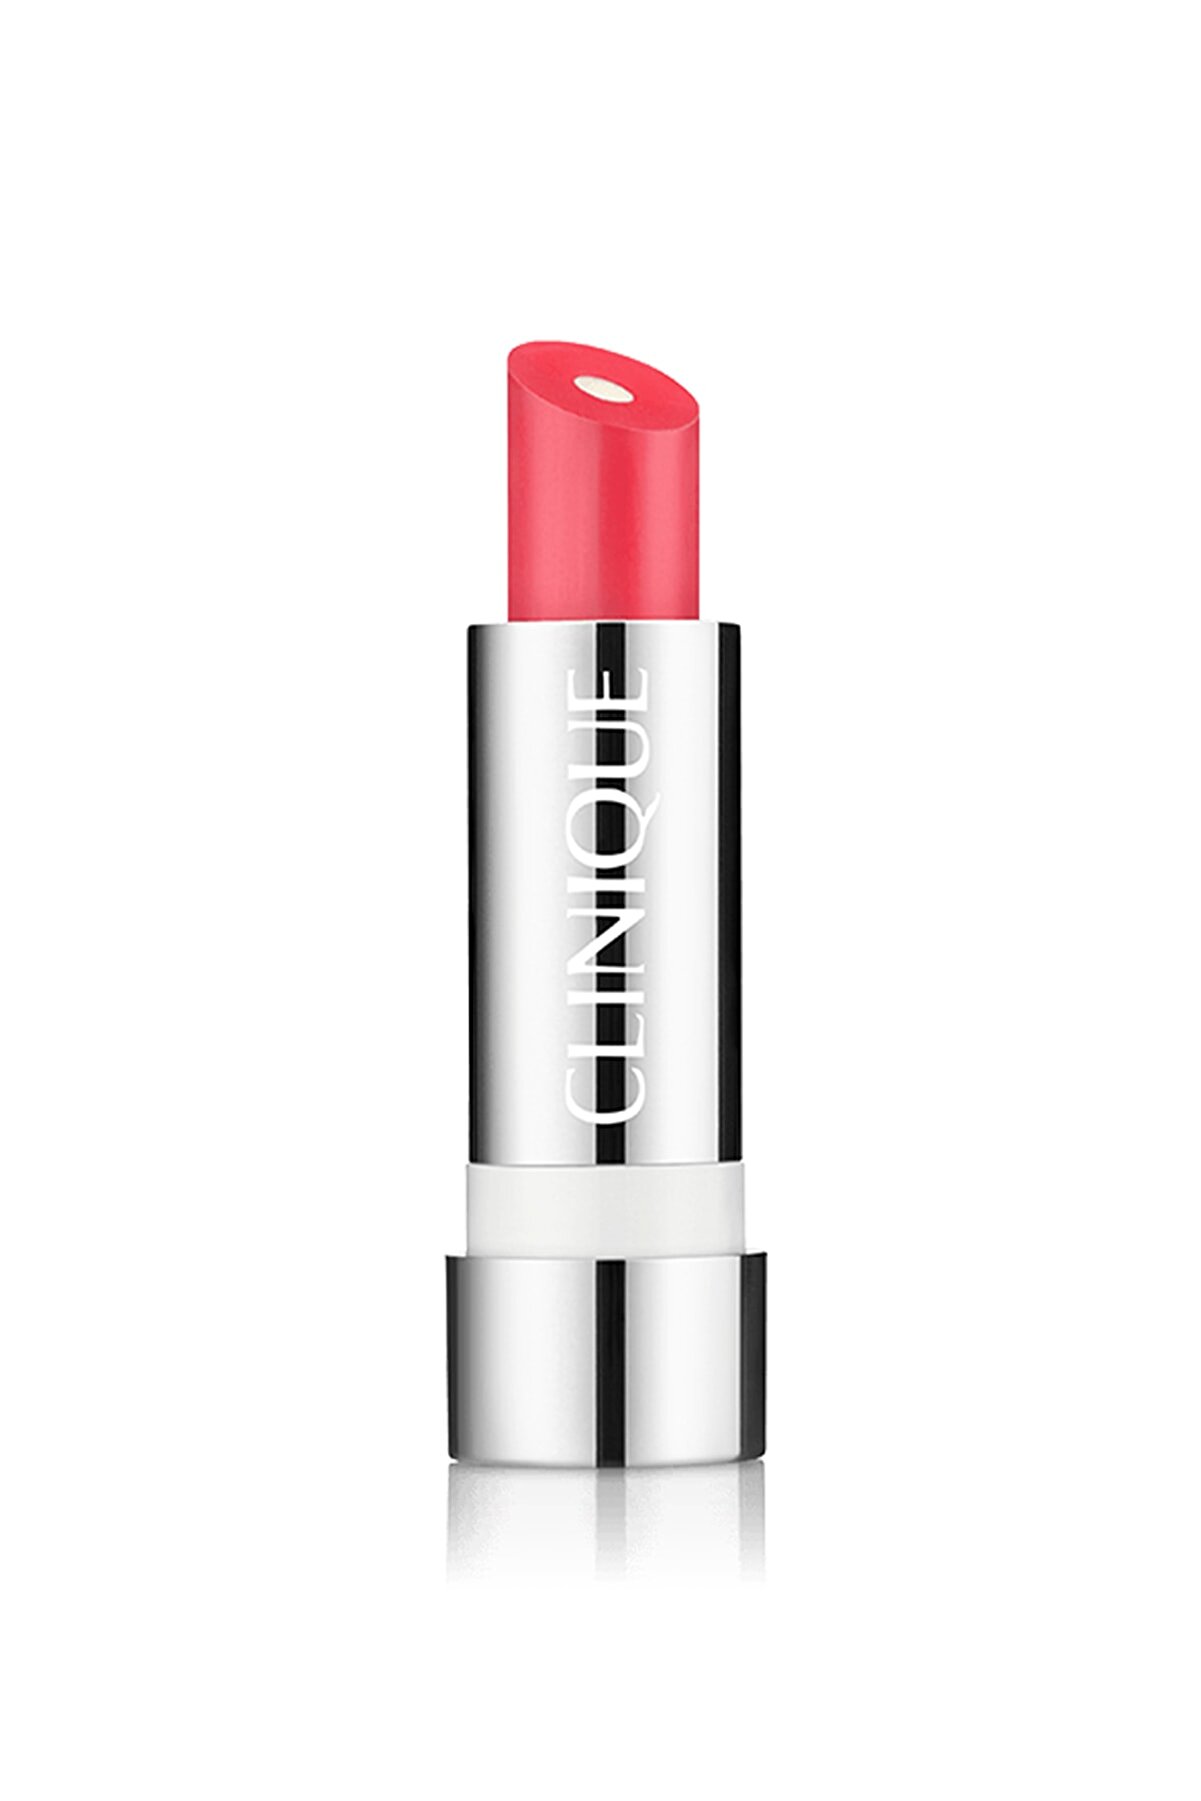 Clinique Ruj - Dramatically Different Lipstick Deluxe 28 Romanticize 020714946623